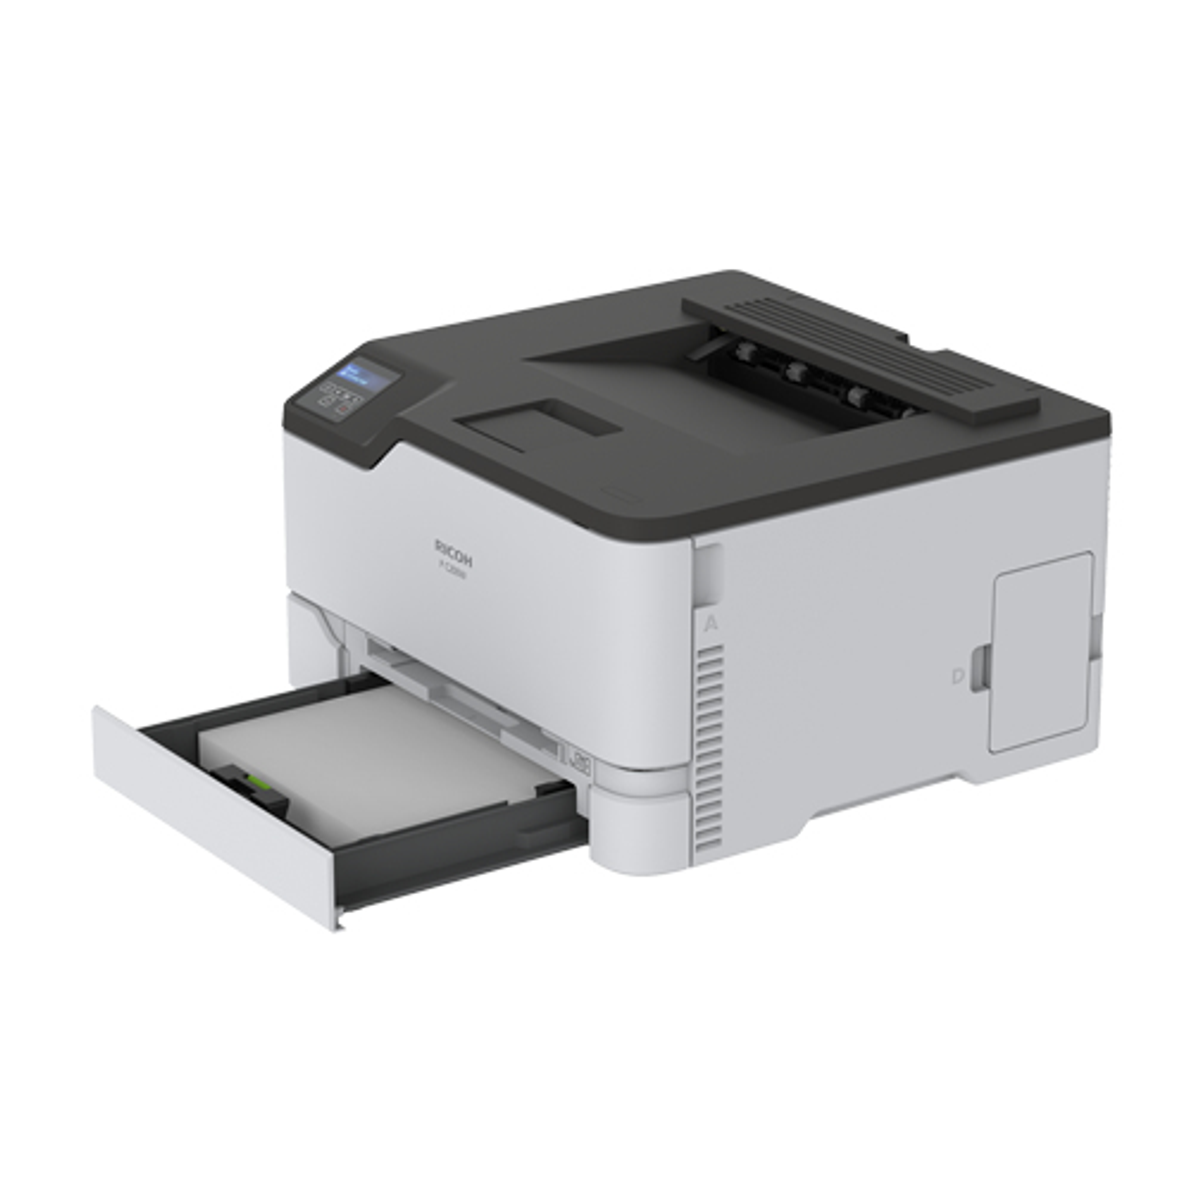 Laserdrucker elektrofotografischer WLAN P Laserstrahlscannen, RICOH C200W Druck Netzwerkfähig